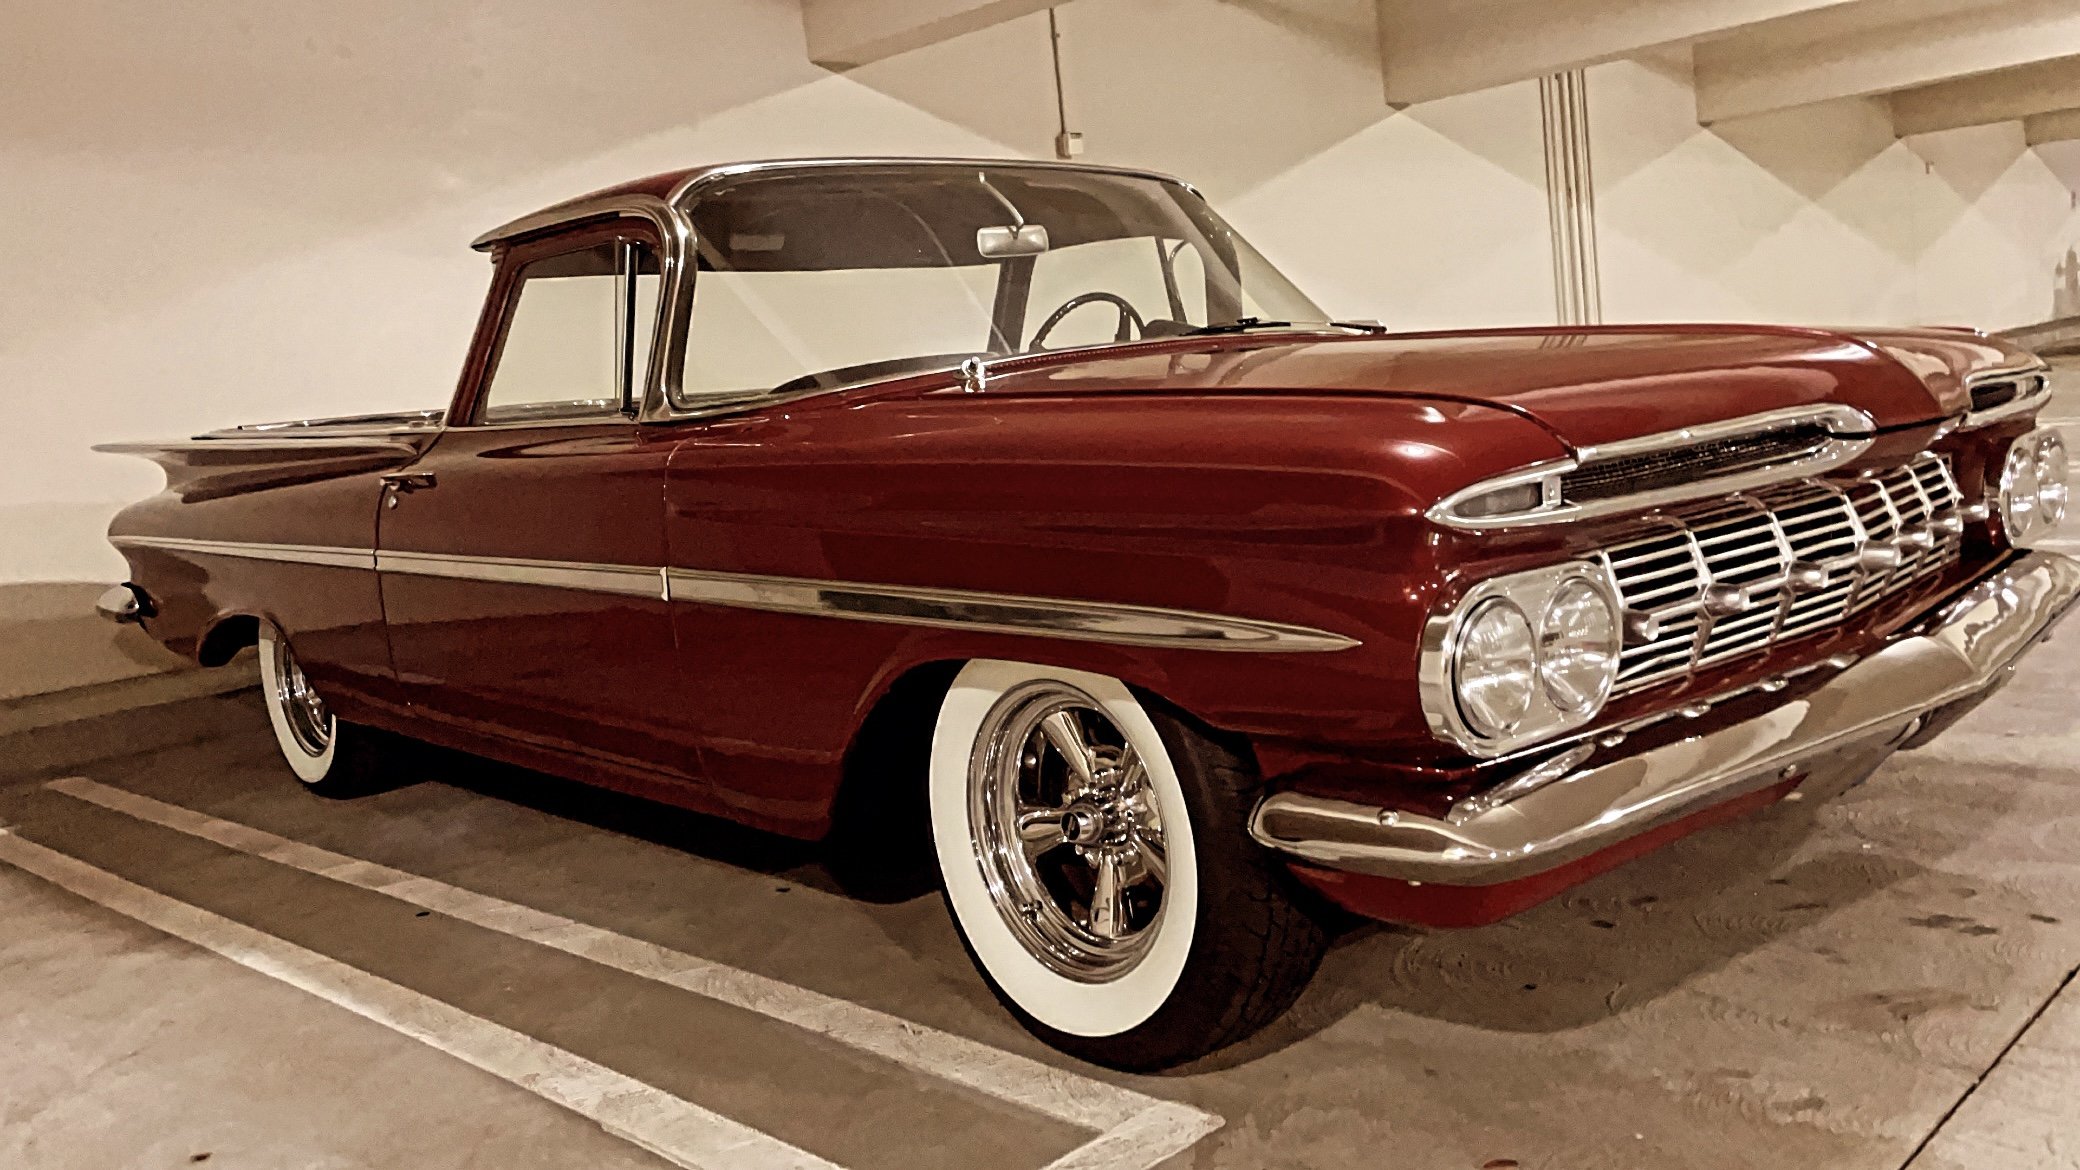 1959 Chevy El Camino